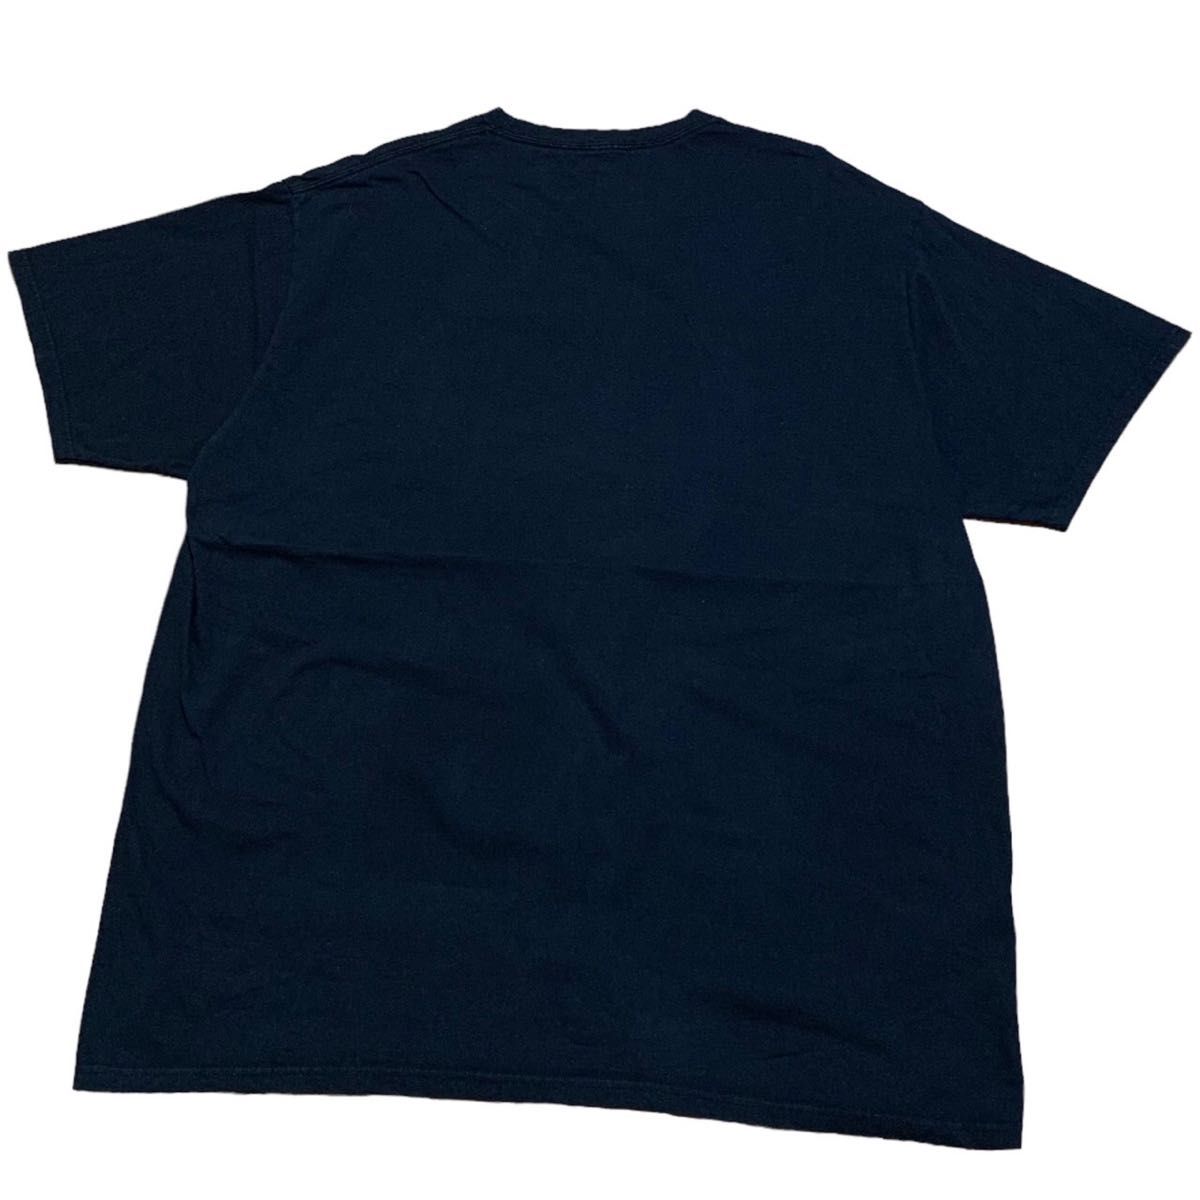 【US古着】NFL ペイトリオッツ スーパーボウル プリント 半袖 Tシャツ ビックサイズ 2XL コットン100%